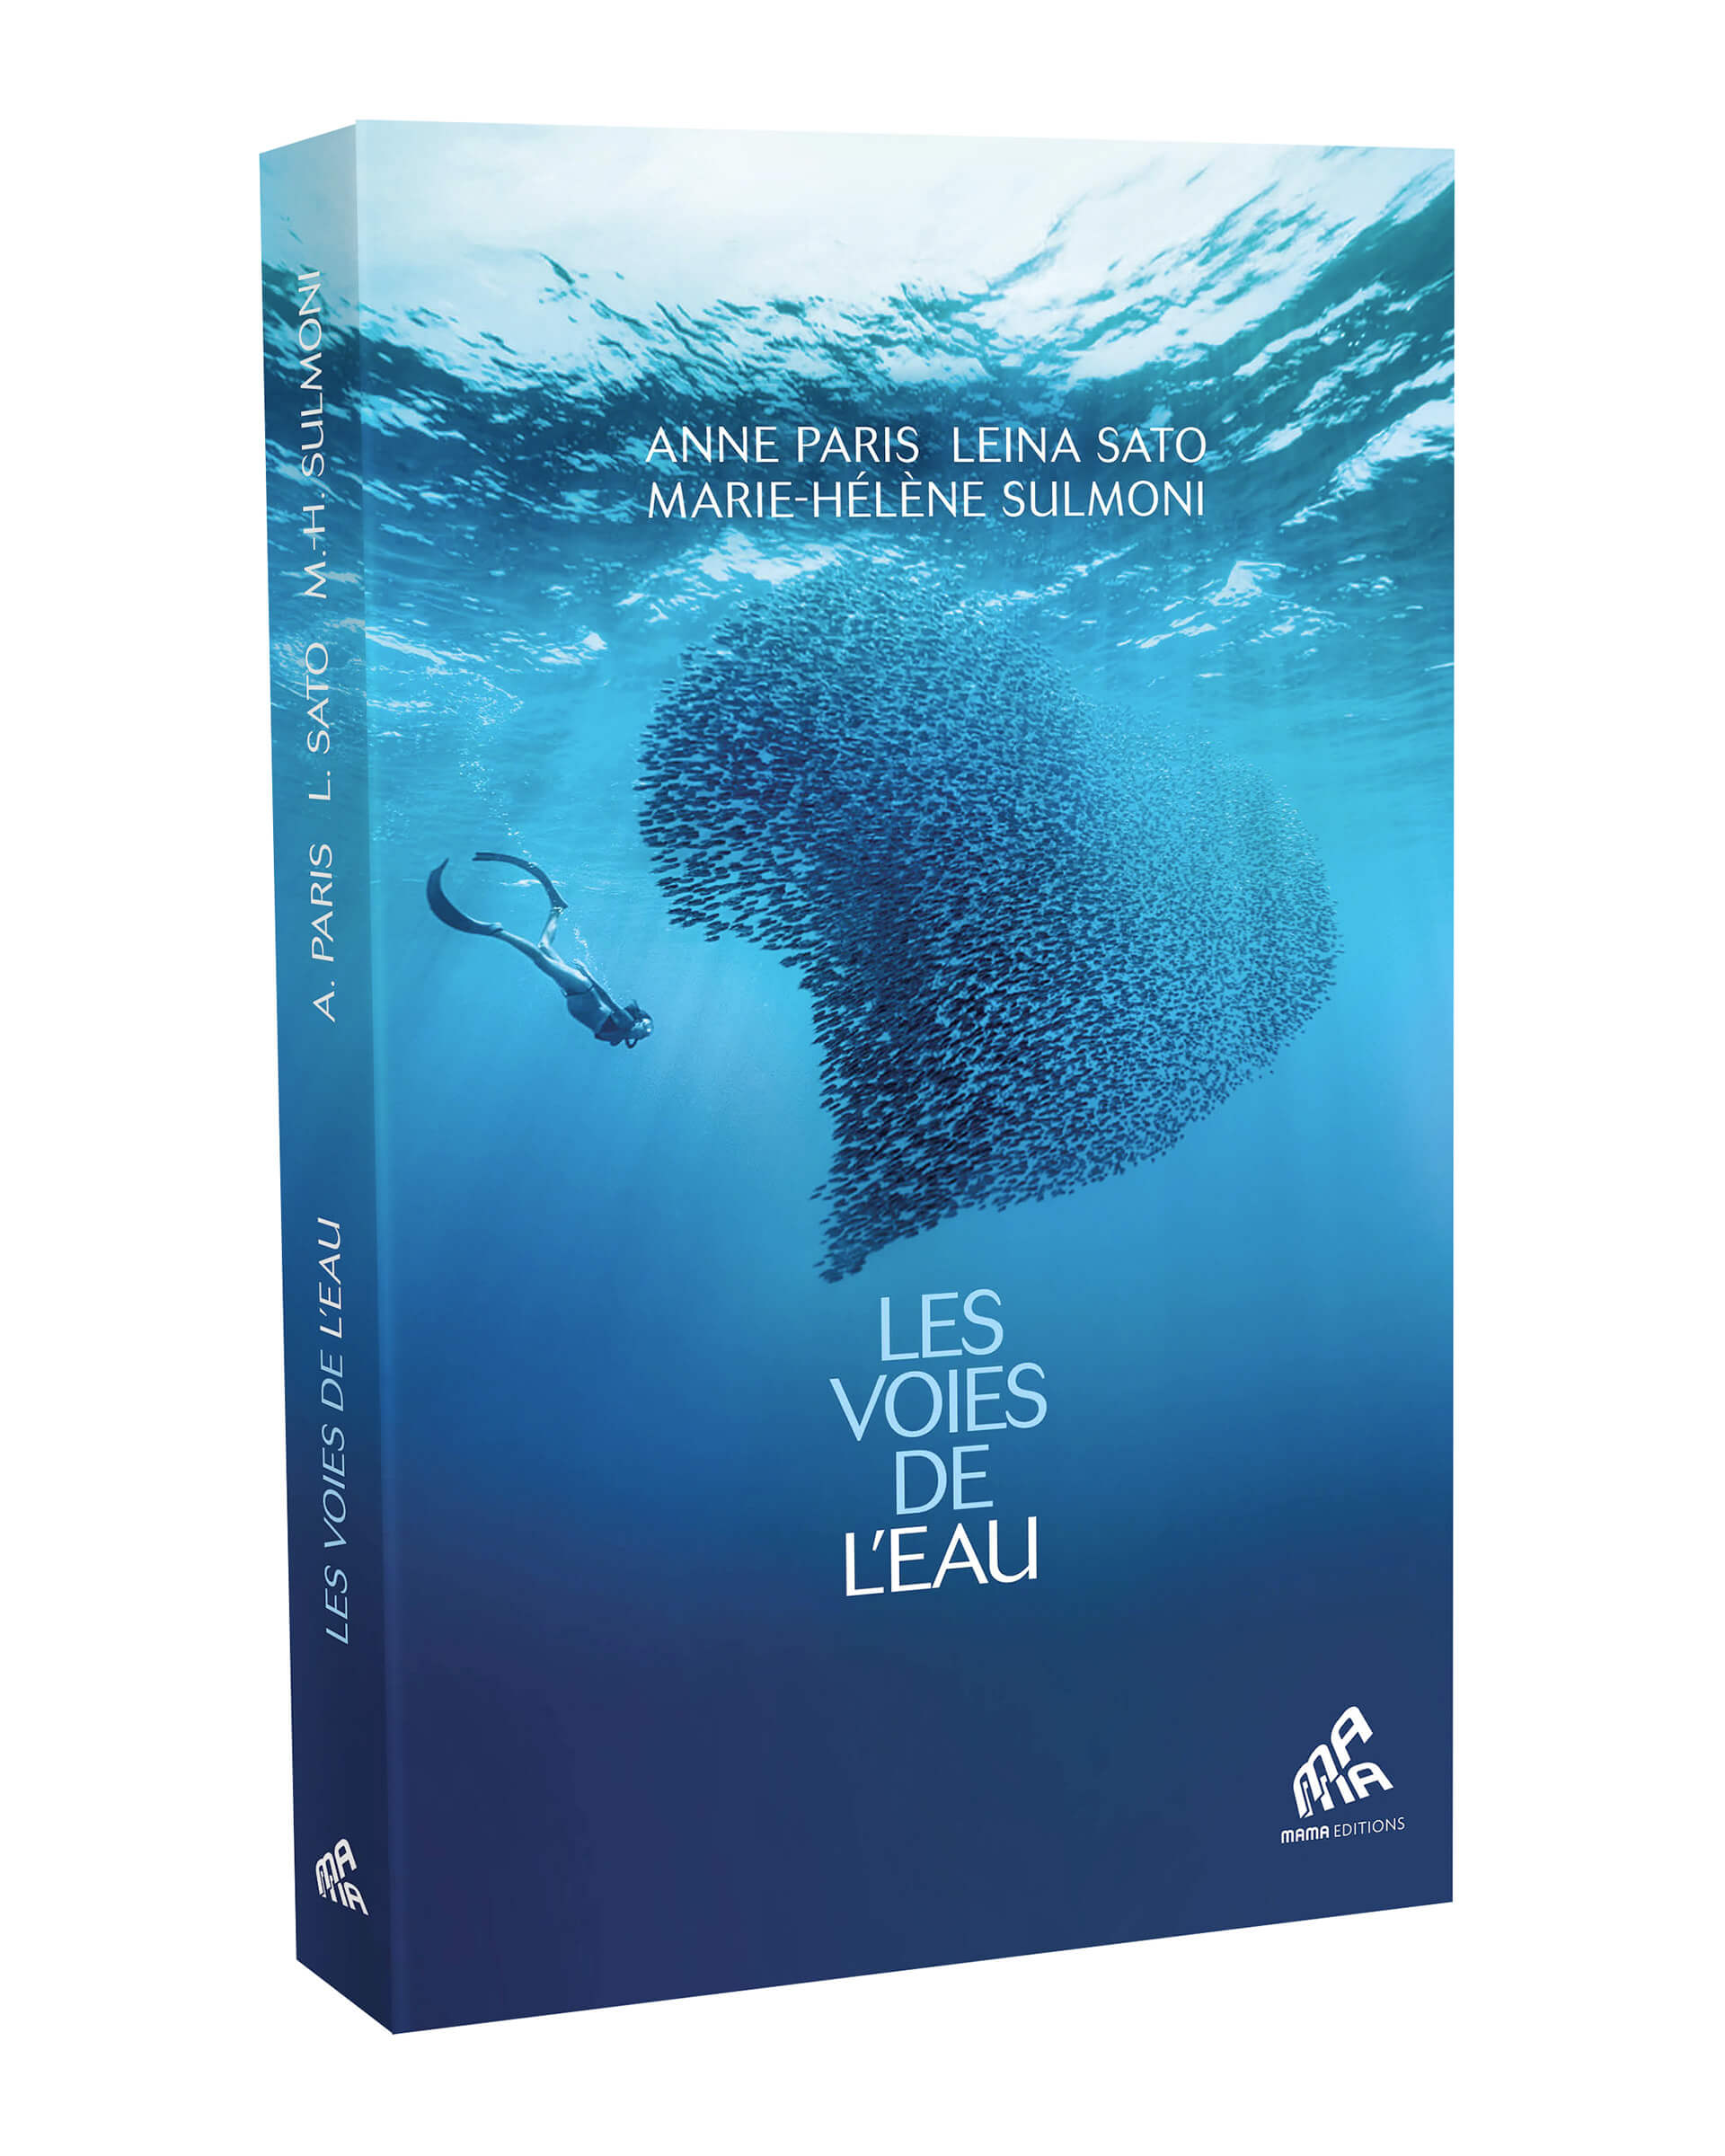 Couverture du livre "Les voies de l'eau" - mama editions - avril 2024 - autrices : Anne Paris, Marie-Hélène Sulmoni et Leina Sato